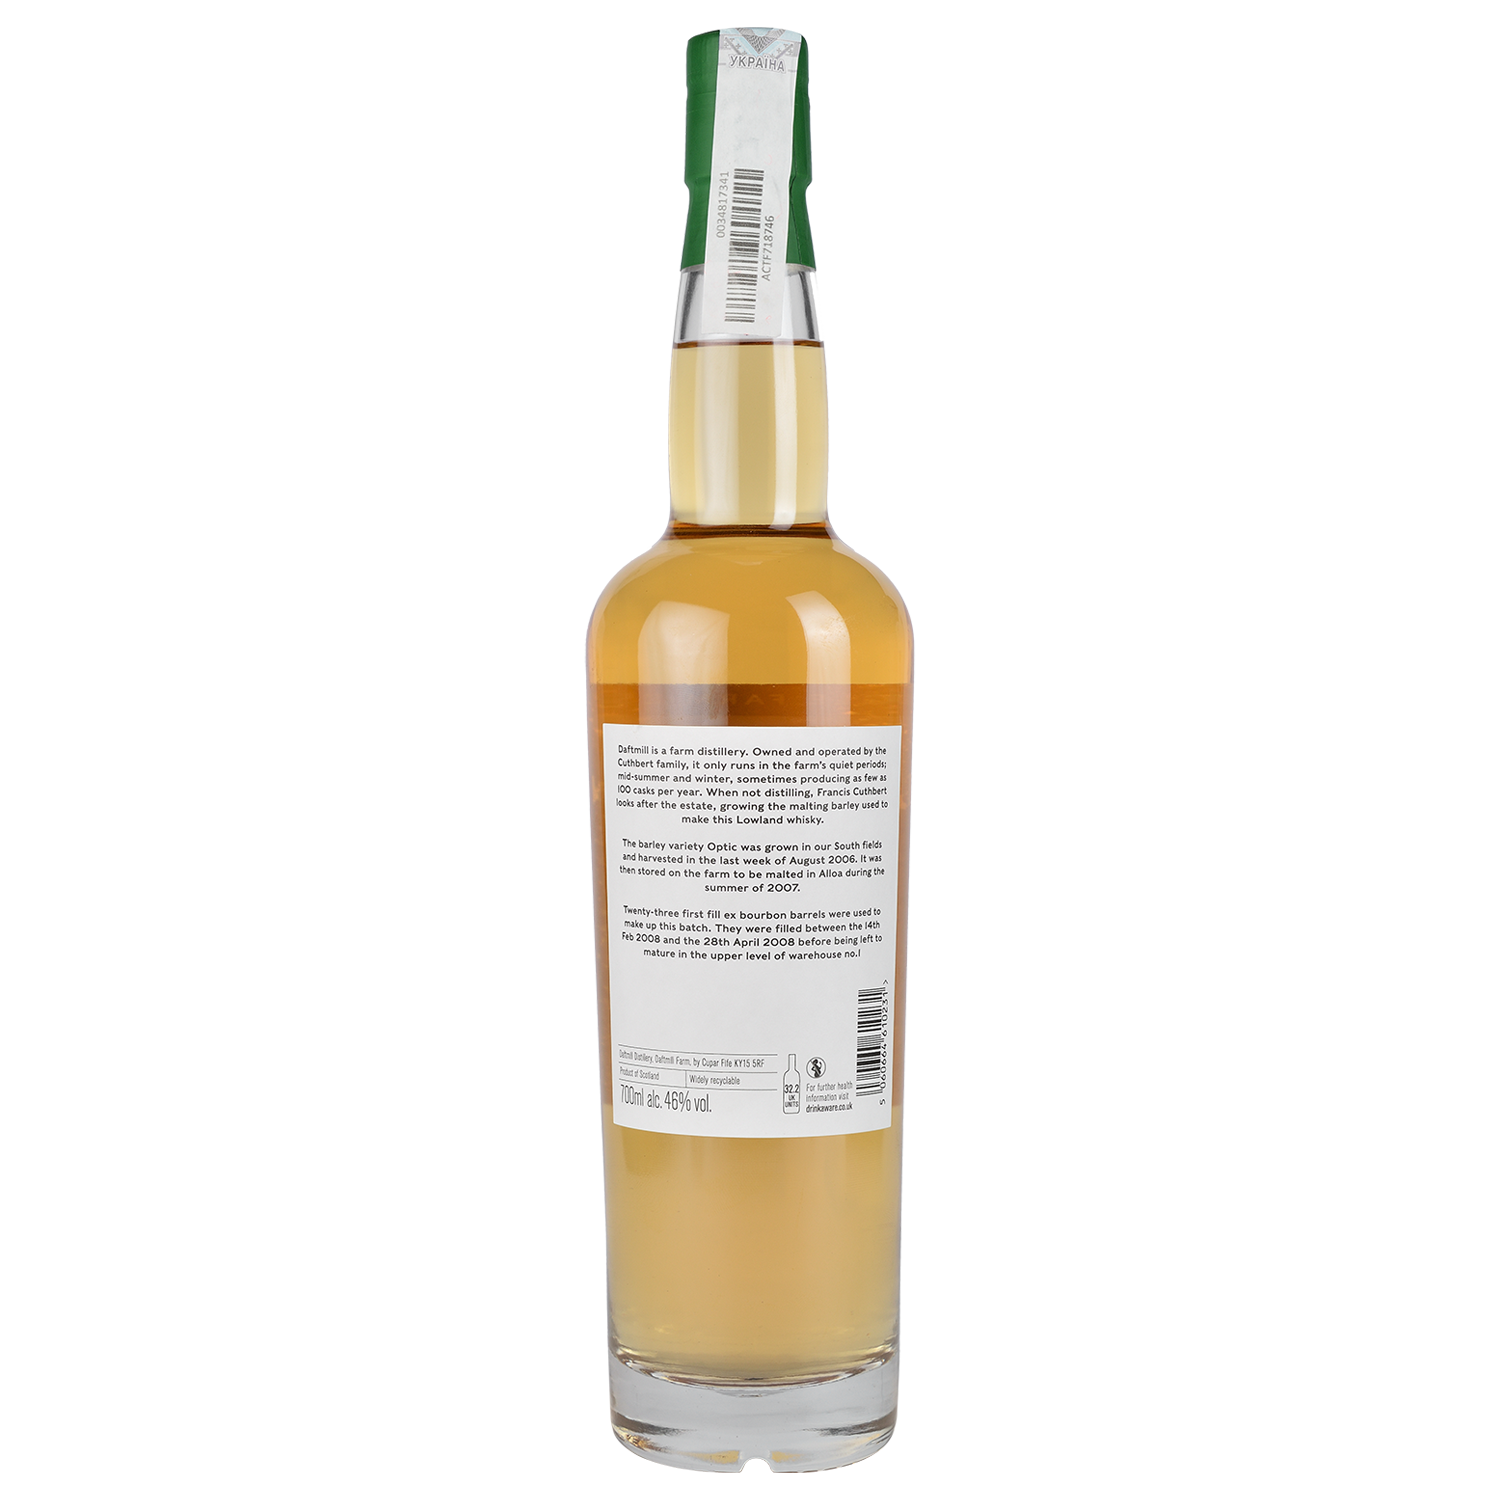 Виски Daftmill Winter Release 2008 Single Malt Scotch Whisky, 46%, 0,7 л - фото 2